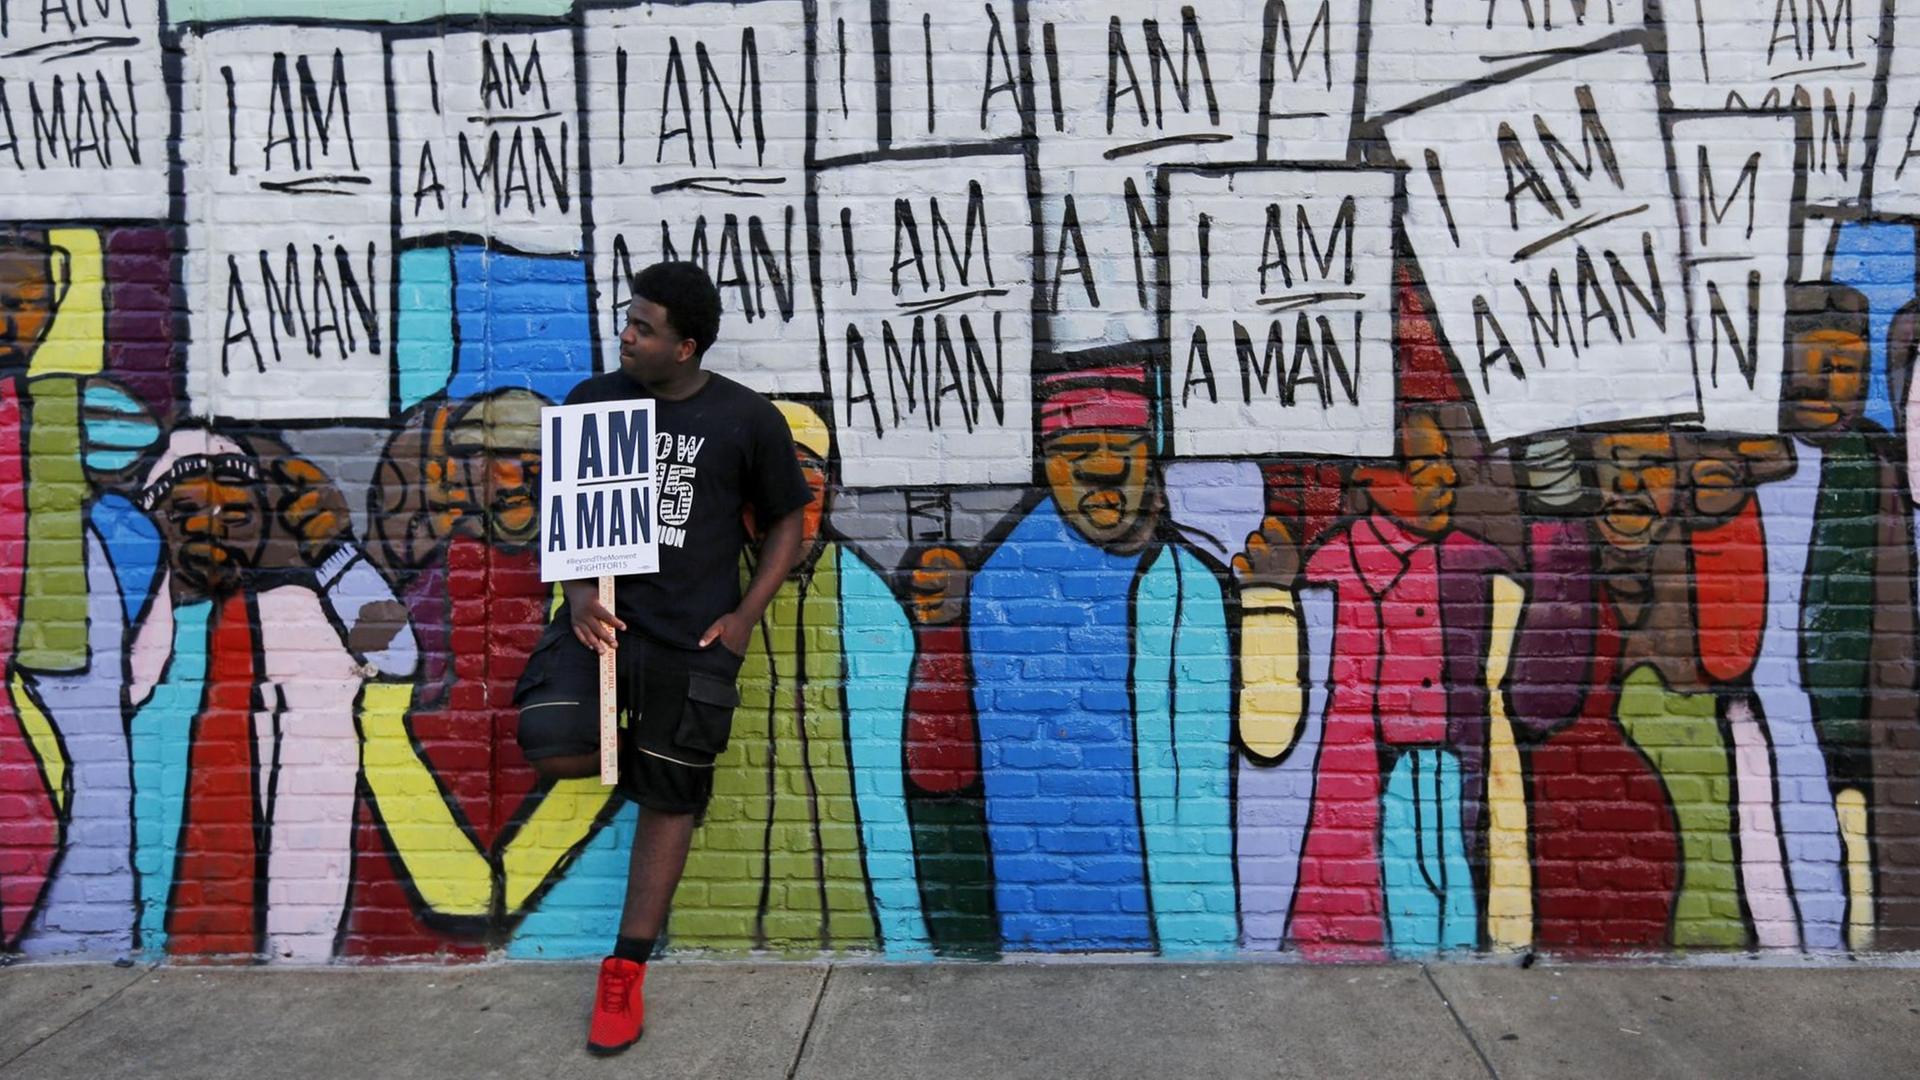 Ein Mann, mit afroamerikanischen Wurzeln, lehnt sich an ein Wandbild mit dem Schild "I am a Man" in der Hand.